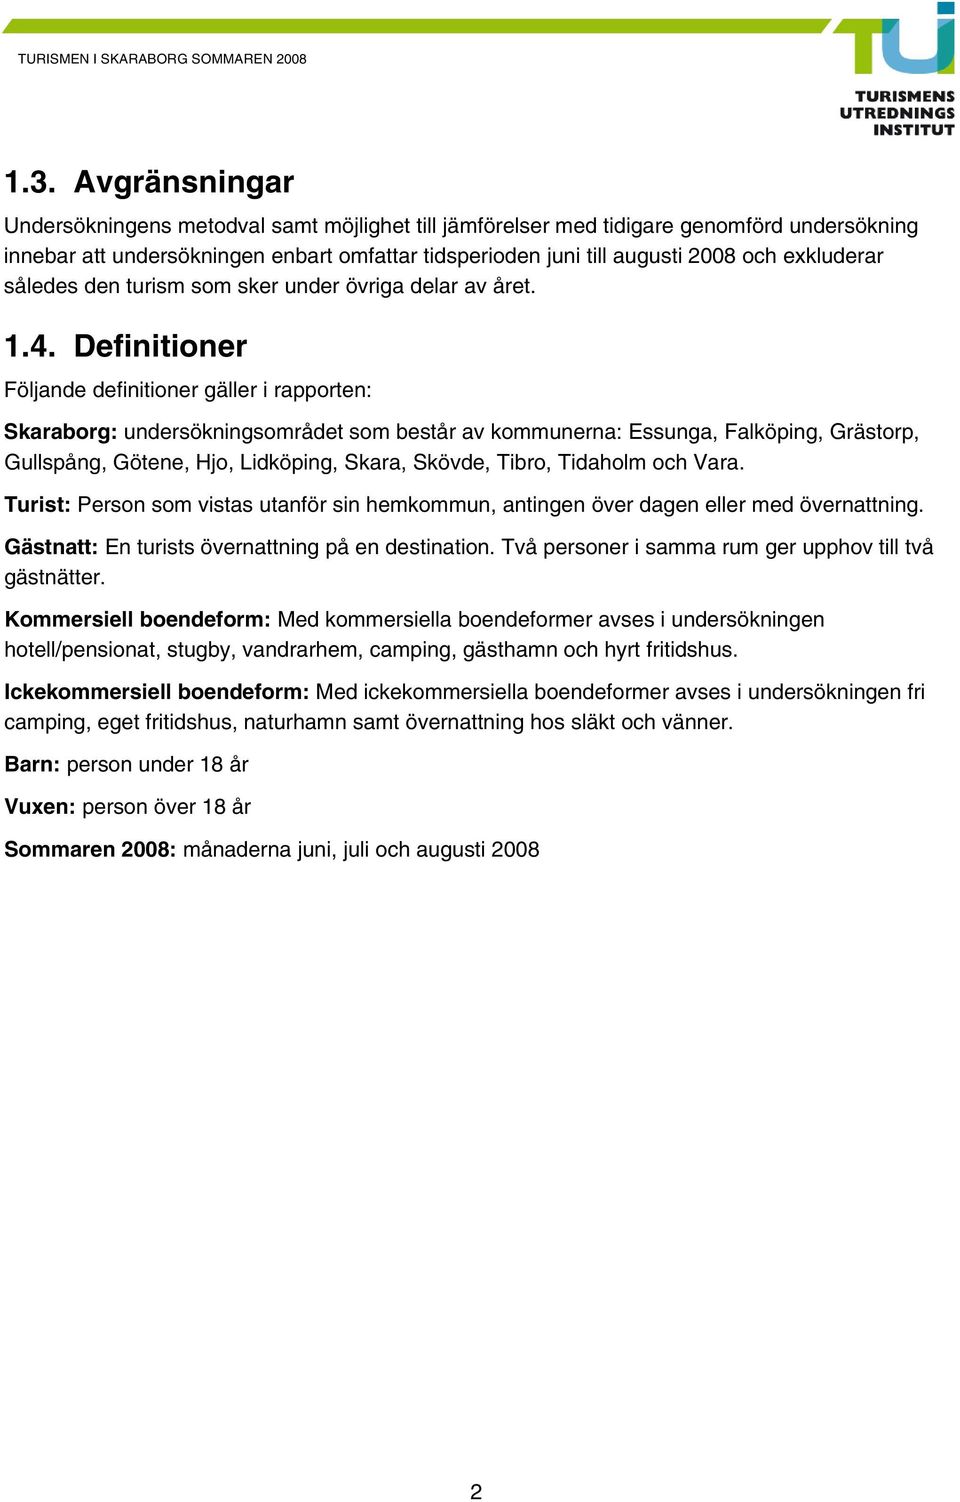 Definitioner Följande definitioner gäller i rapporten: Skaraborg: undersökningsområdet som består av kommunerna: Essunga, Falköping, Grästorp, Gullspång, Götene, Hjo, Lidköping, Skara, Skövde, Tibro,